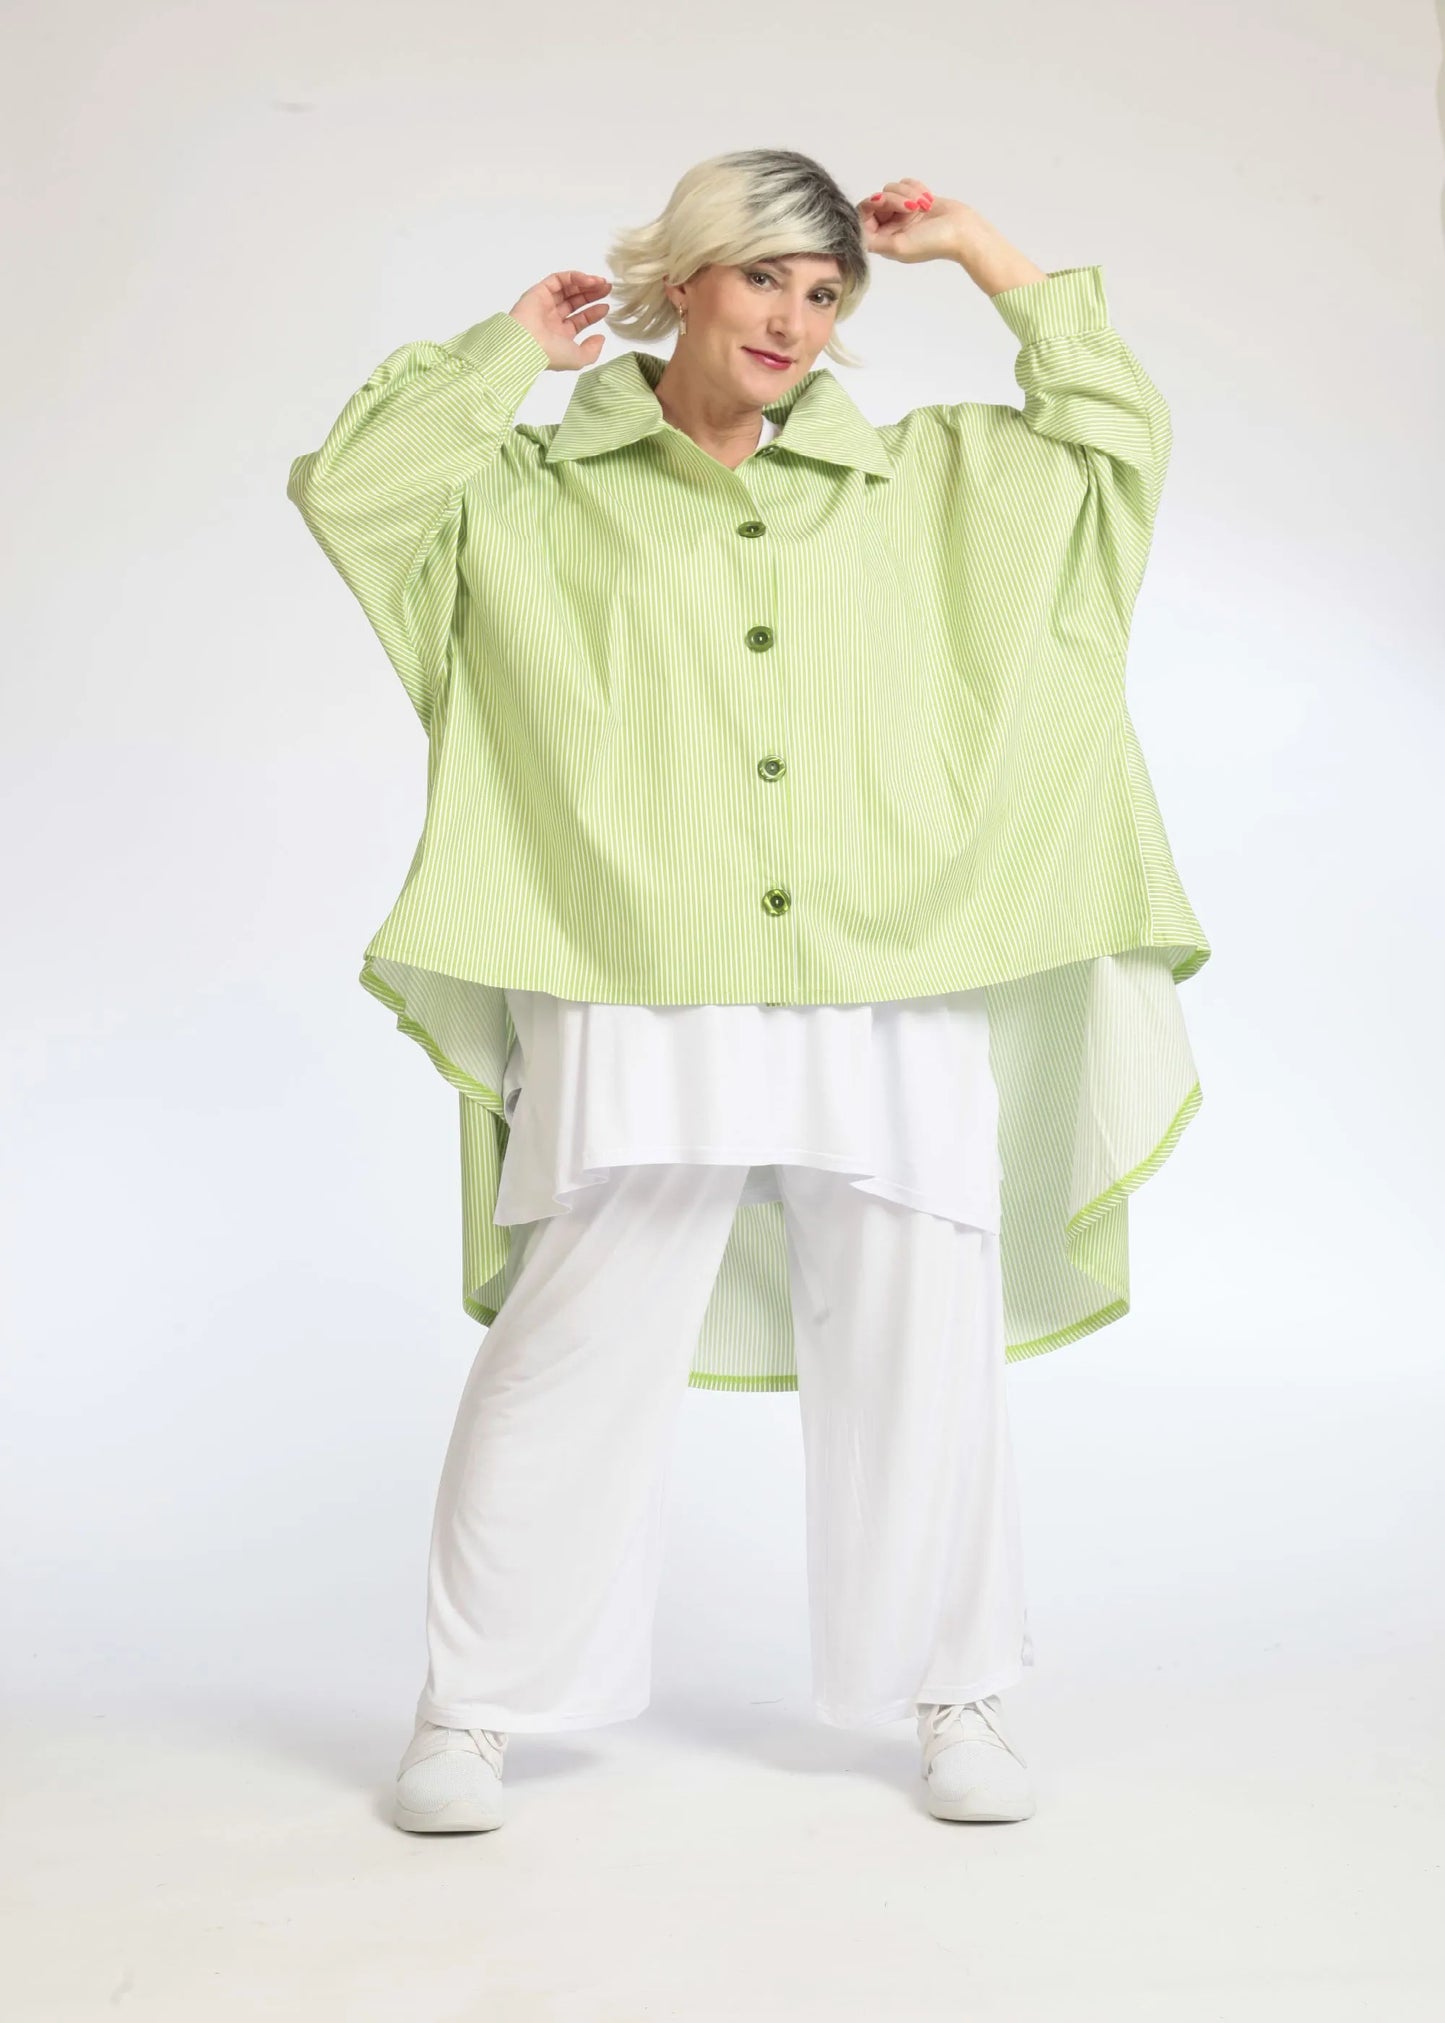 Sommer Bluse in Vokuhila Form aus glatter Popeline Qualität, Verena in Apfelgrün-Weiß